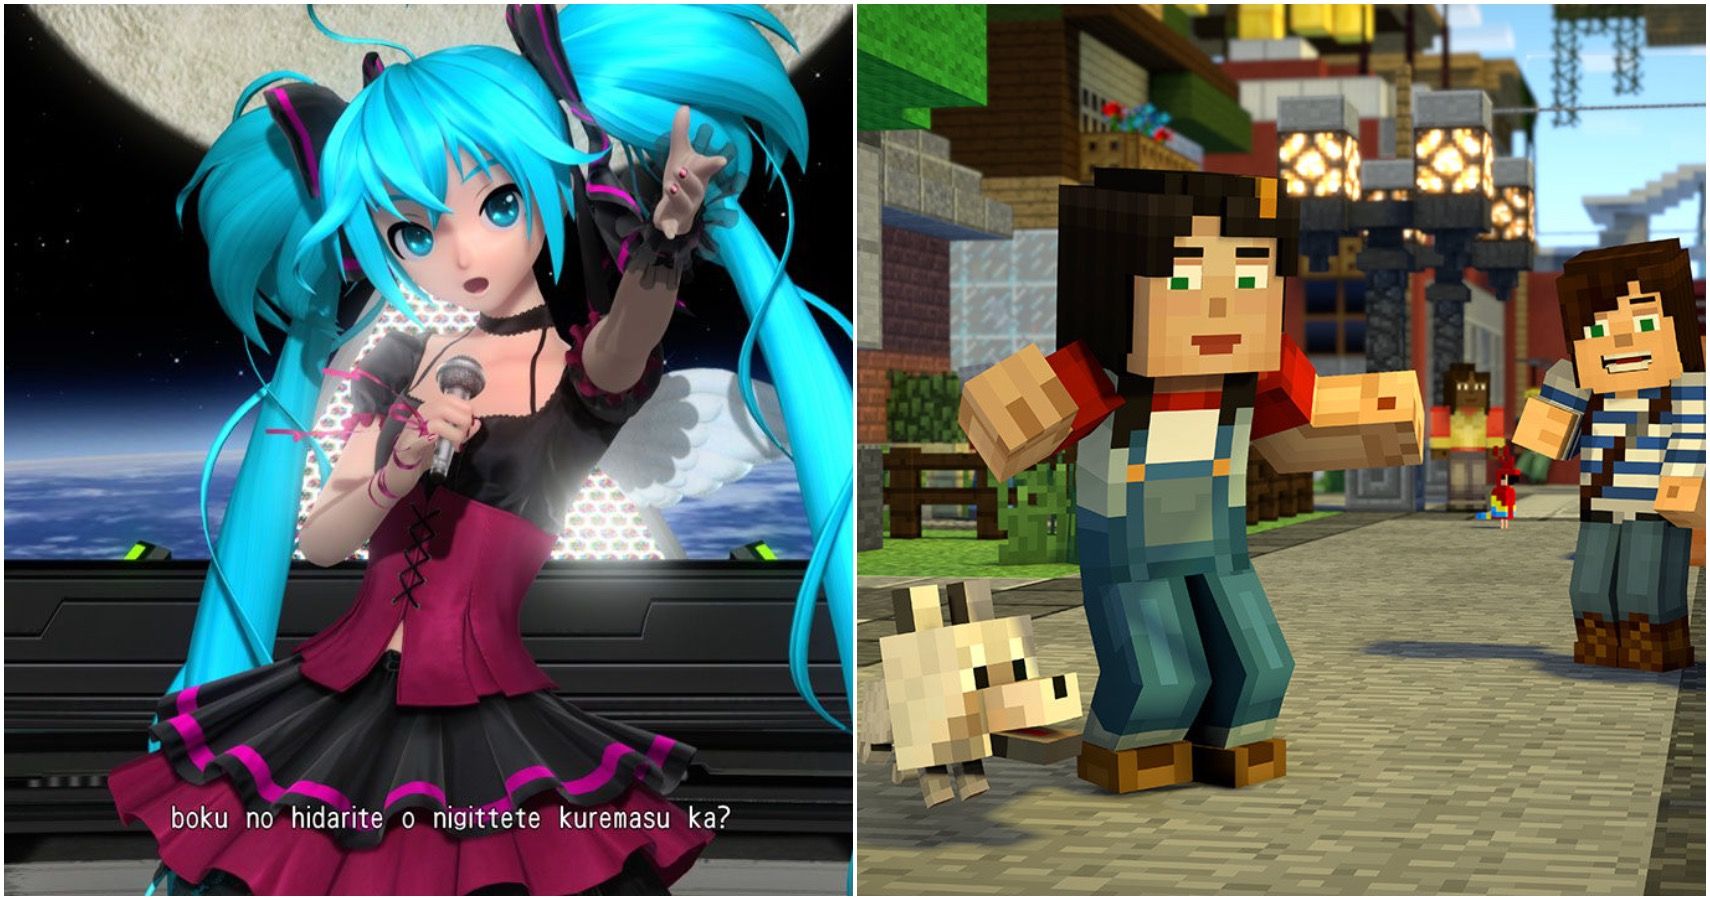 Hatsune Miku and Minecraft: Story Mode